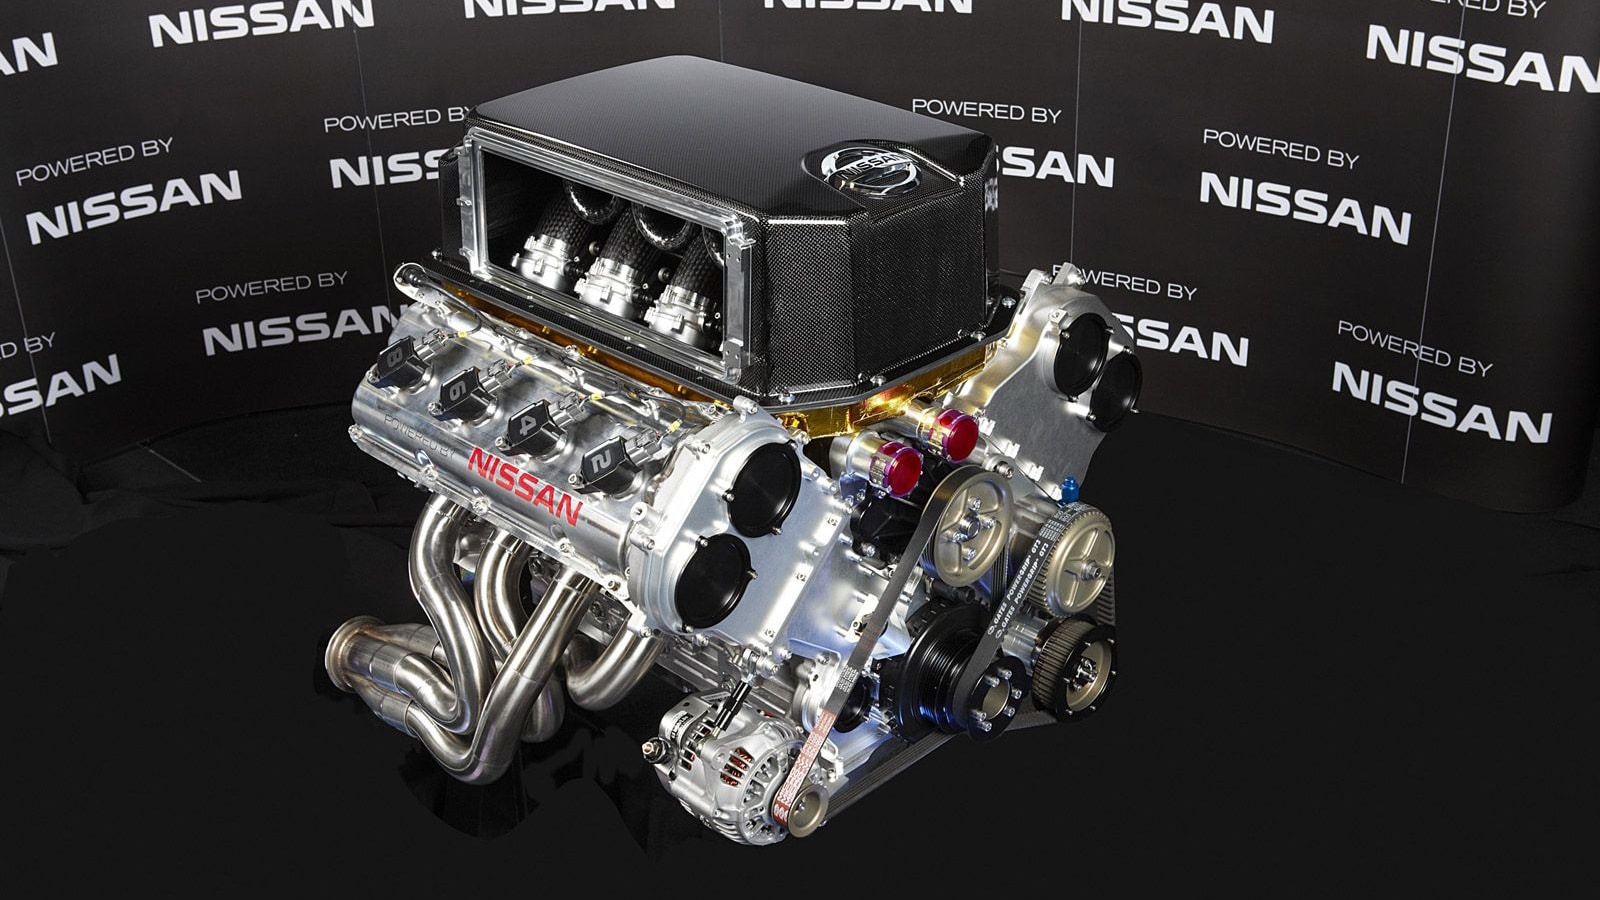 Nissan VK56DE racing V-8 engine